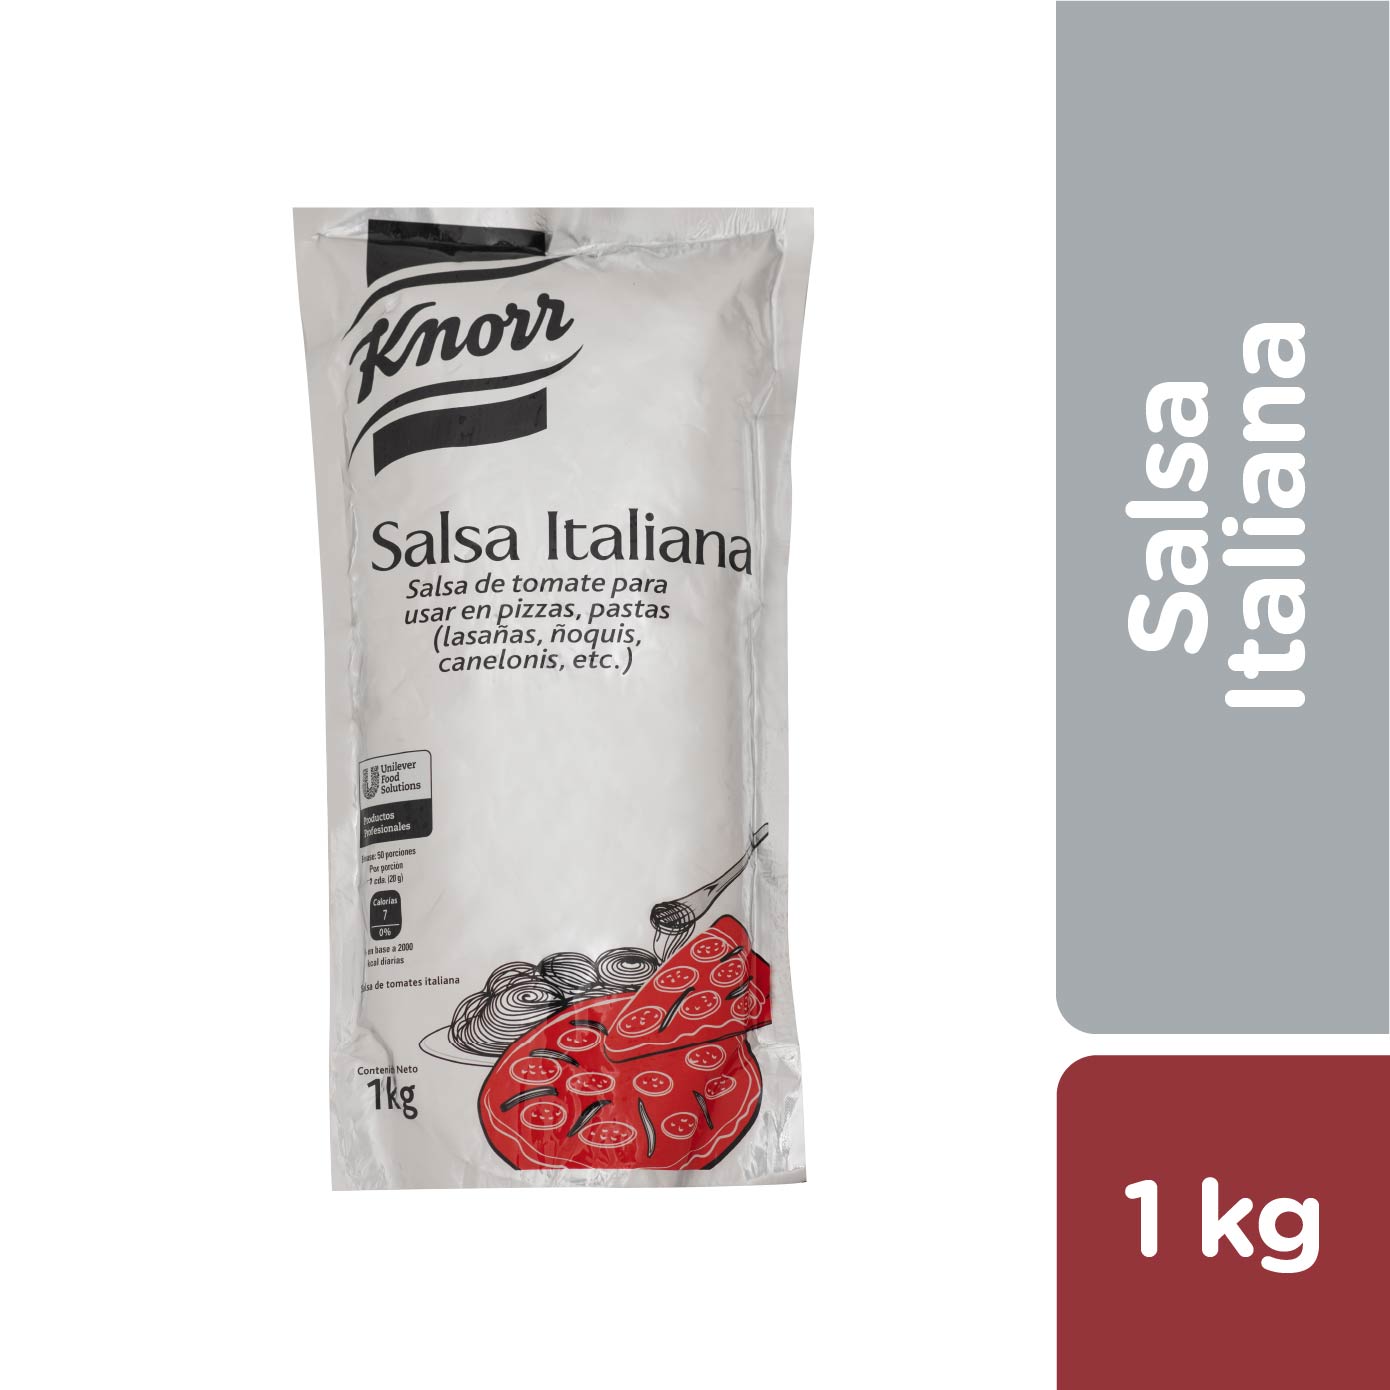 Knorr Salsa Italiana 1 kg